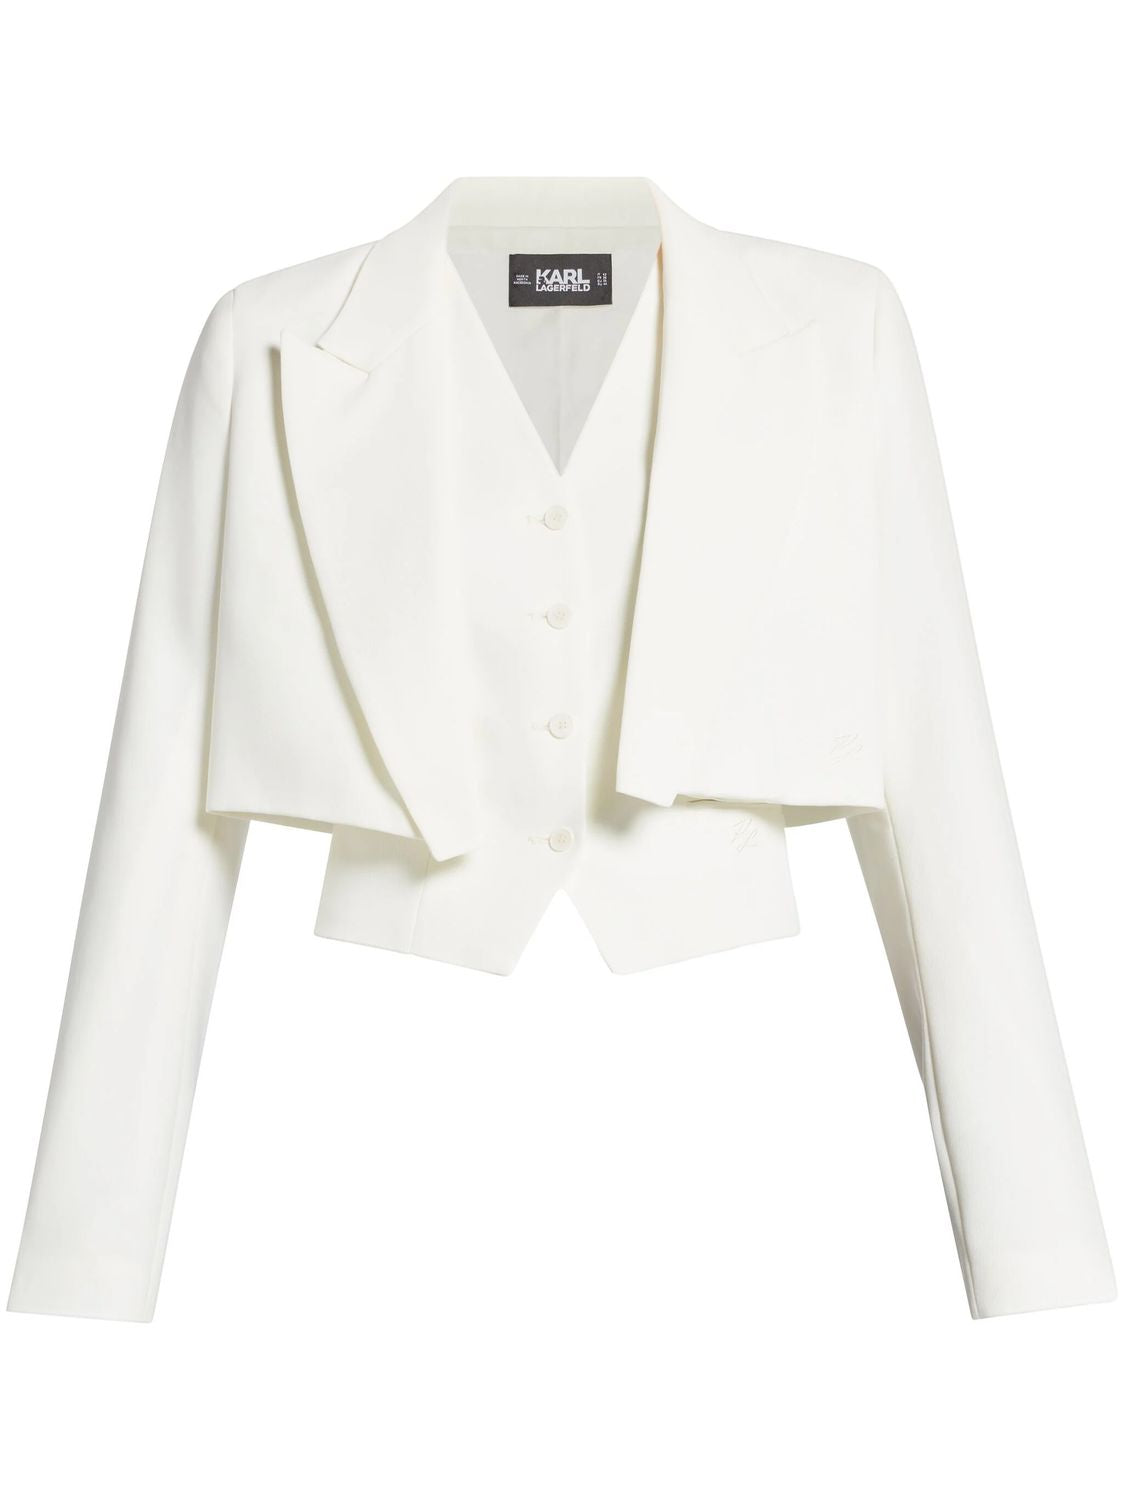 KARL LAGERFELD 重新設計的白色收入式西裝外套